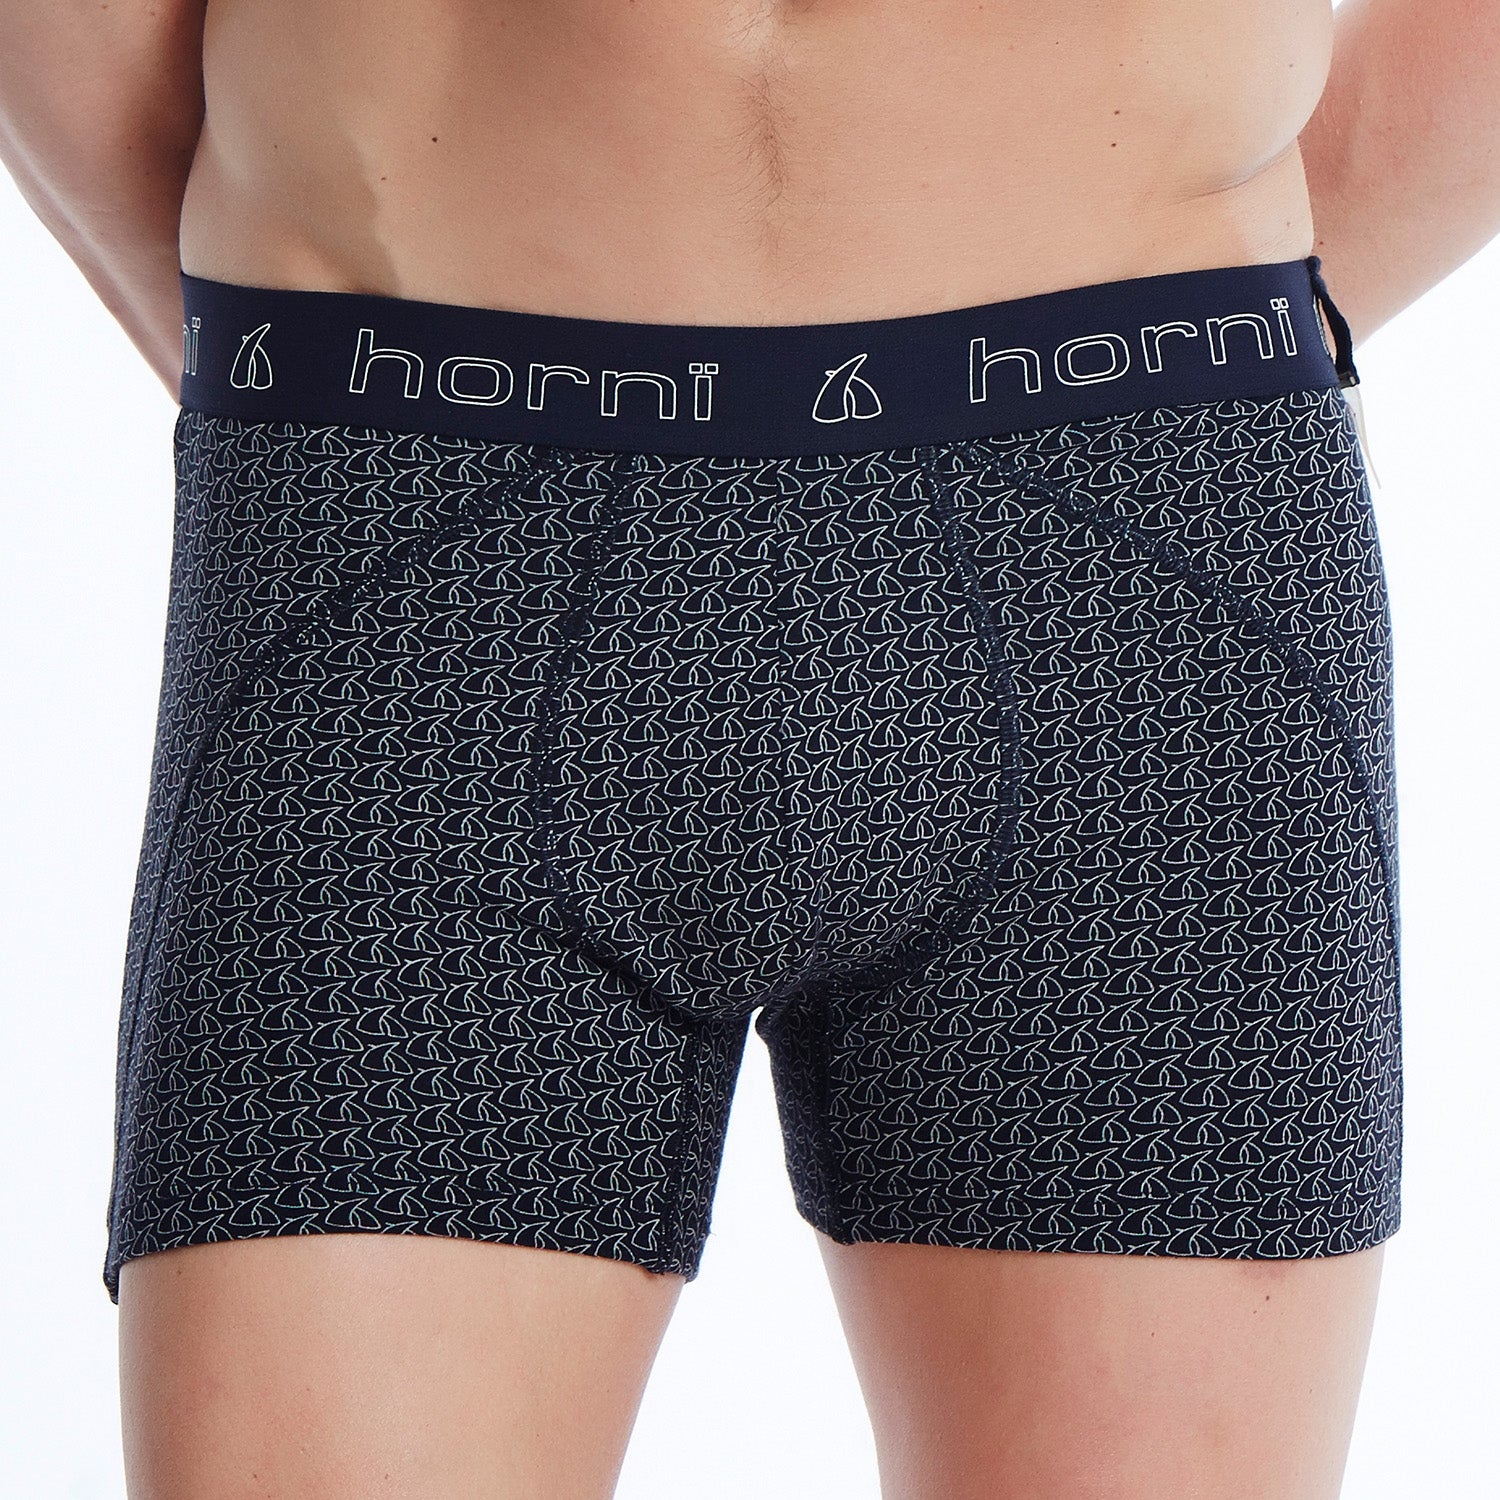 All – hornï underwear